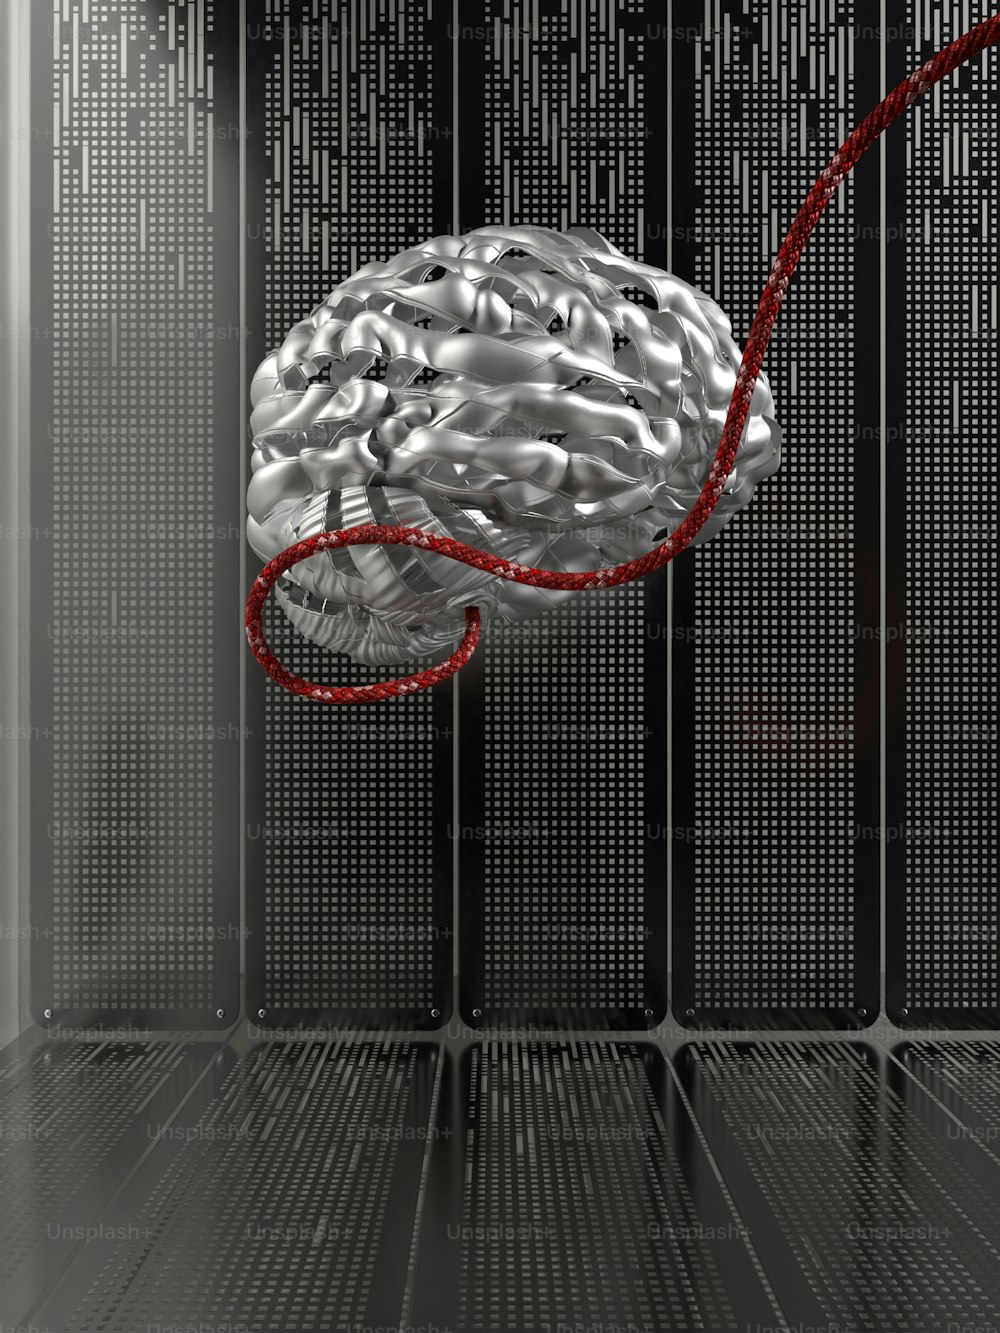 赤いコードが接続されたサーバールームの脳